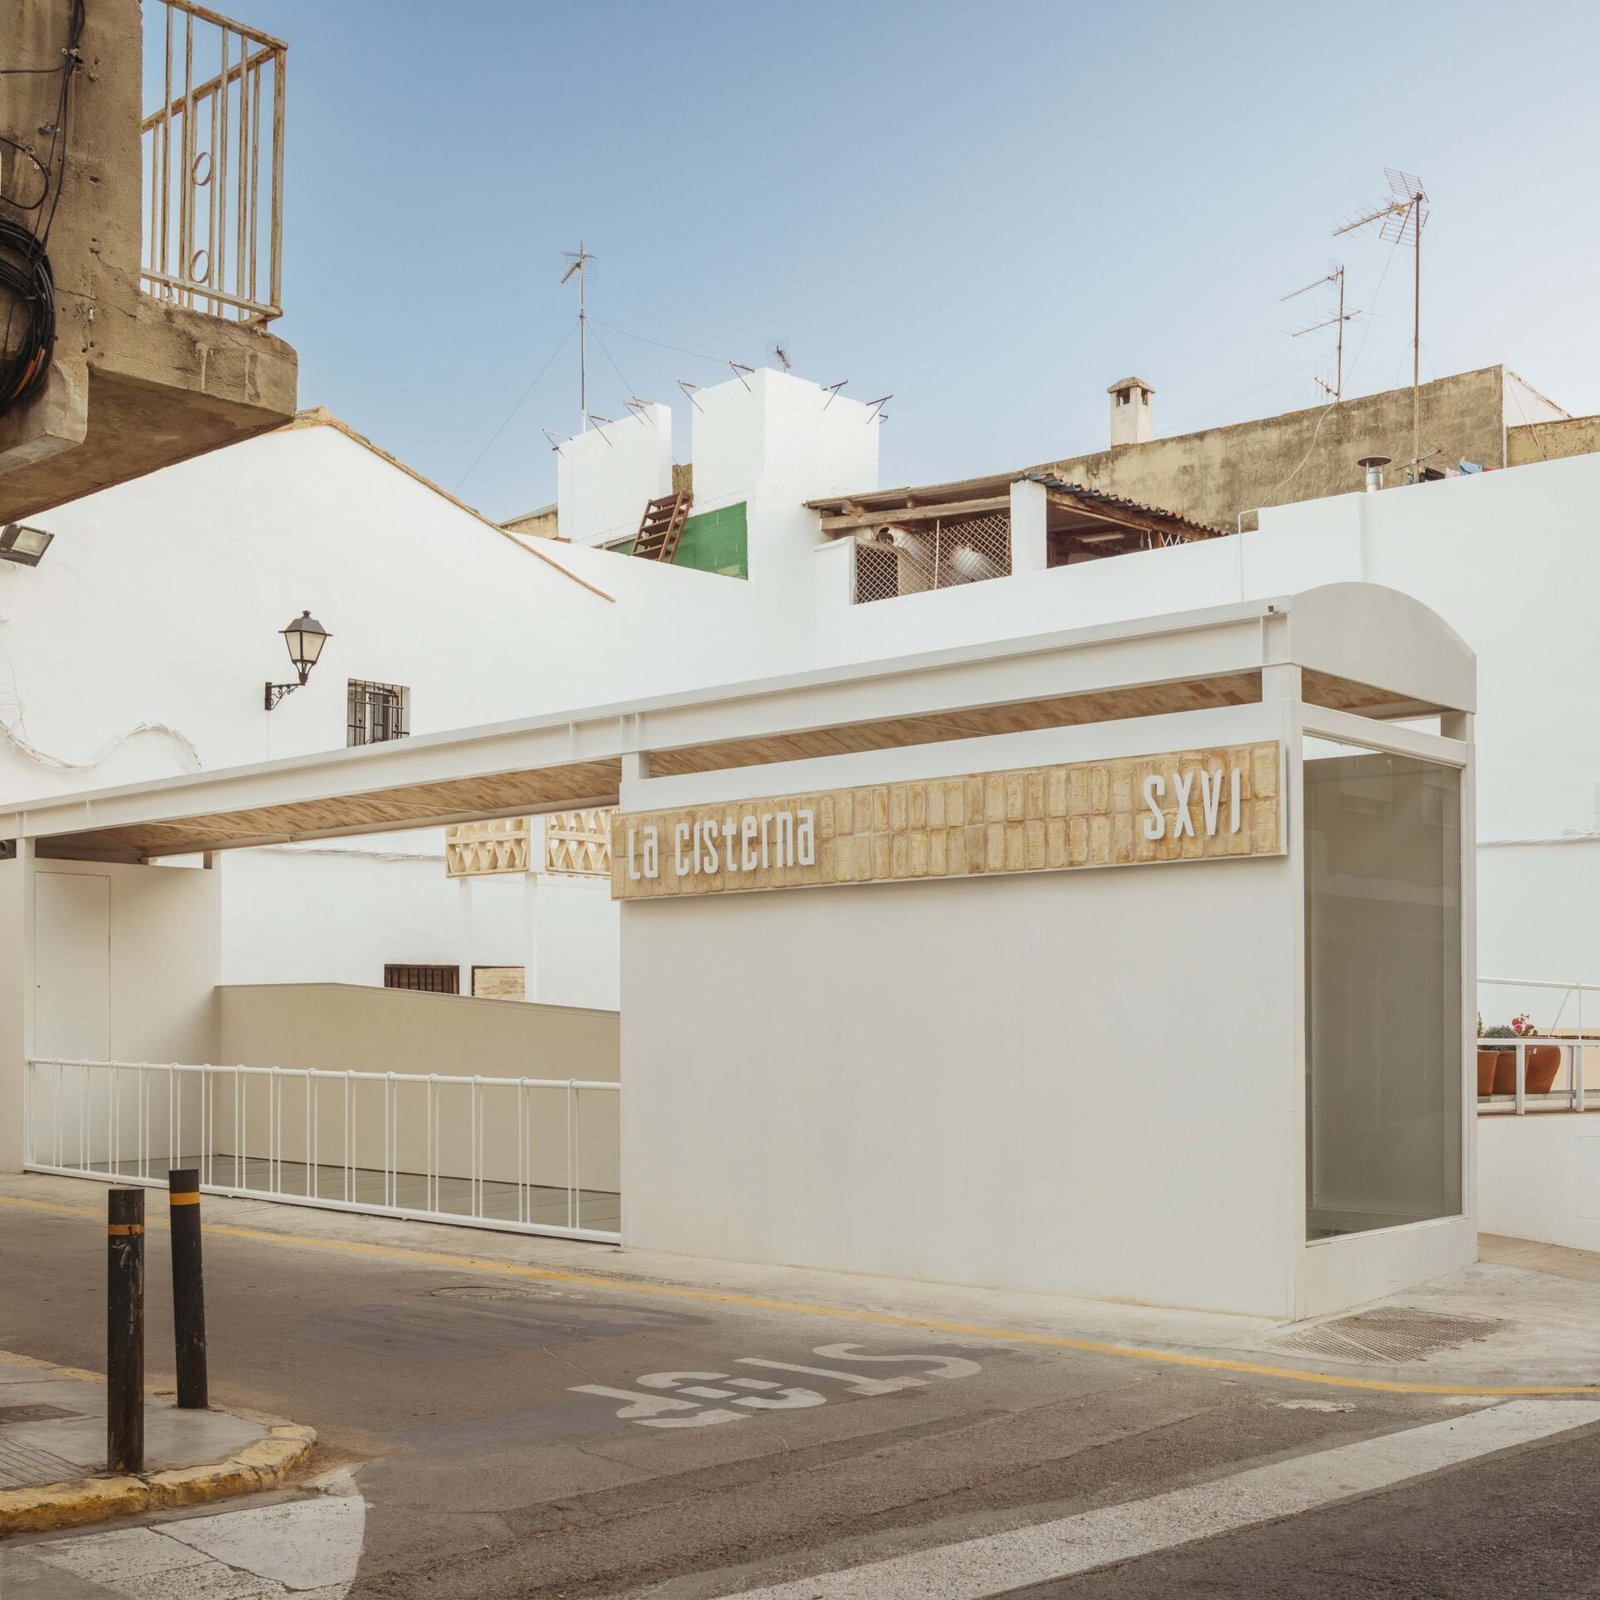 Mentrestant Arquitectura Cooperativa - Plaza de la Cisterna (Alejandro Gomez-Vives)